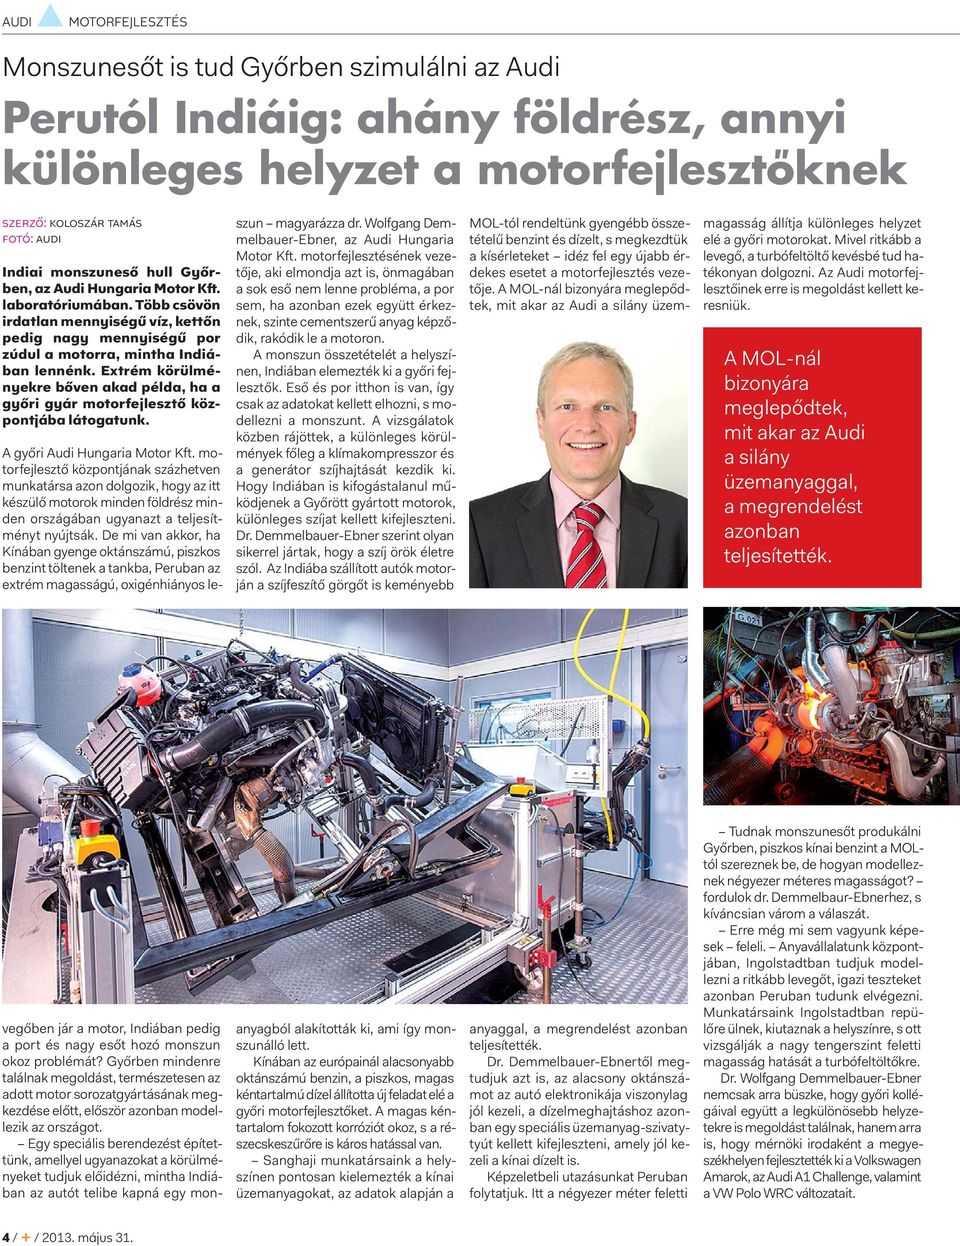 Extrém körülményekre bőven akad példa, ha a győri gyár motorfejlesztő központjába látogatunk. A győri Audi Hungaria Motor Kft.